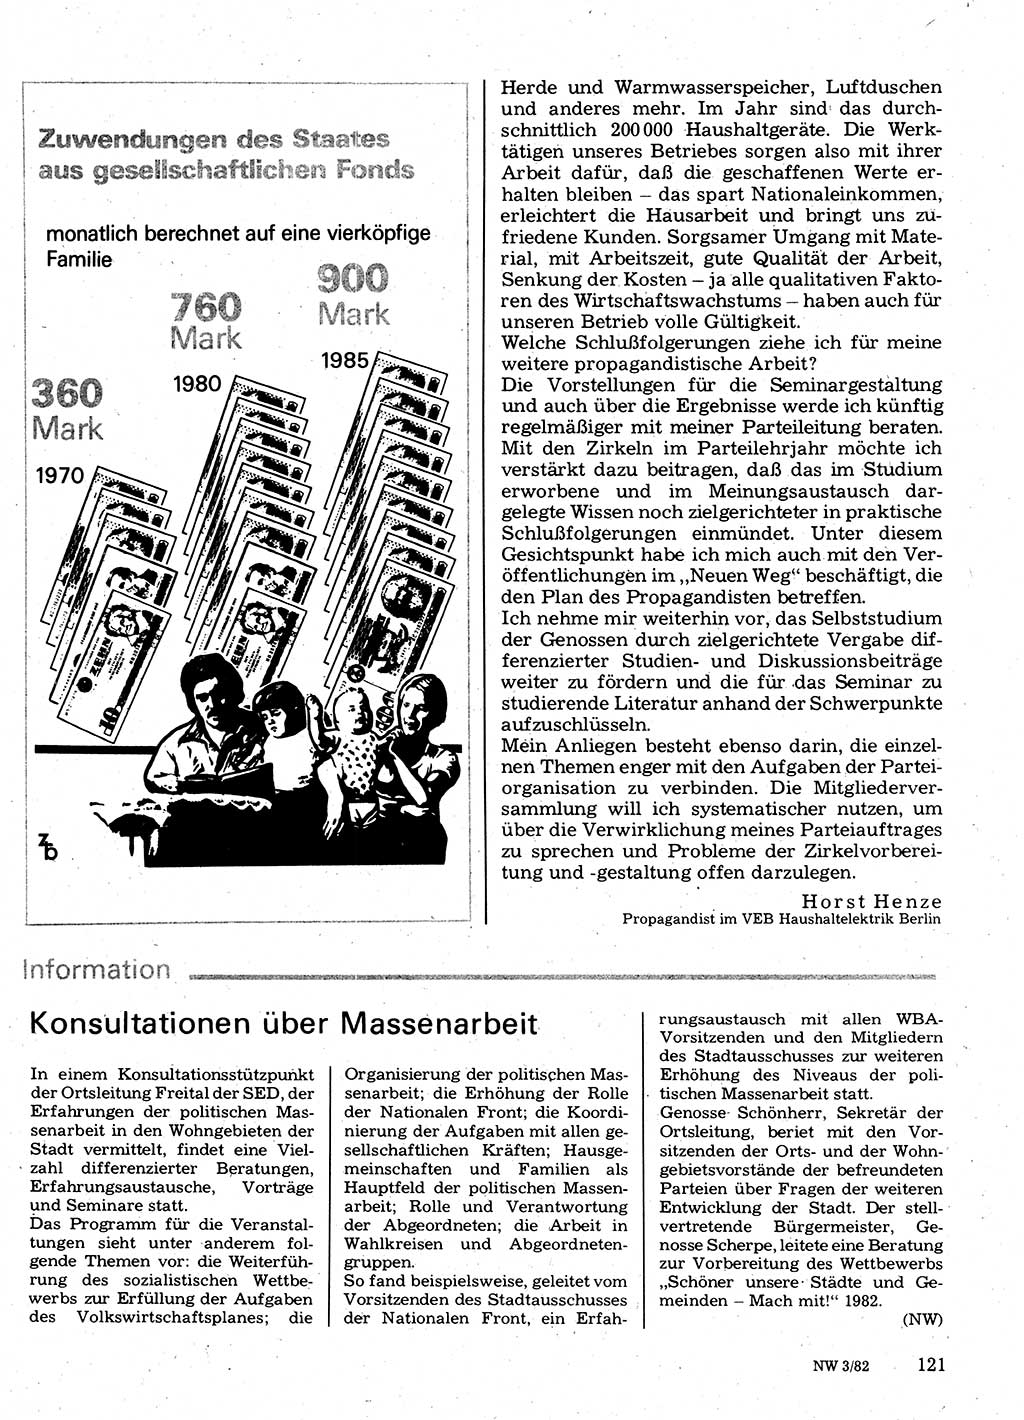 Neuer Weg (NW), Organ des Zentralkomitees (ZK) der SED (Sozialistische Einheitspartei Deutschlands) für Fragen des Parteilebens, 37. Jahrgang [Deutsche Demokratische Republik (DDR)] 1982, Seite 121 (NW ZK SED DDR 1982, S. 121)